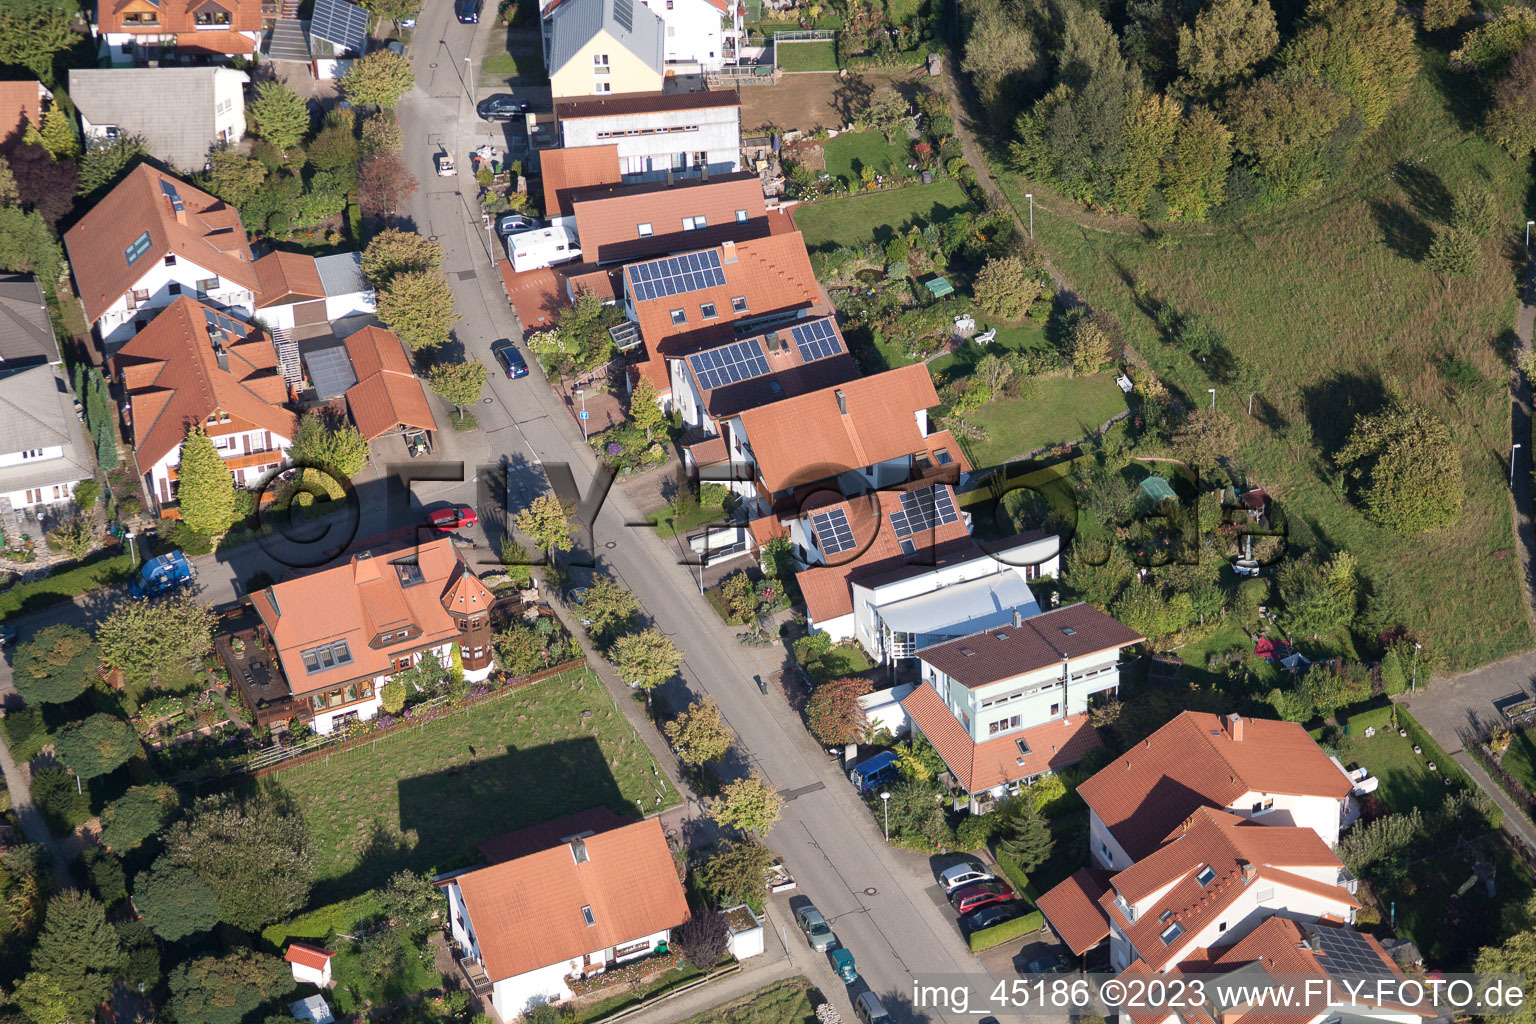 Langensteinbach, Mozartstr in Karlsbad im Bundesland Baden-Württemberg, Deutschland aus der Luft betrachtet